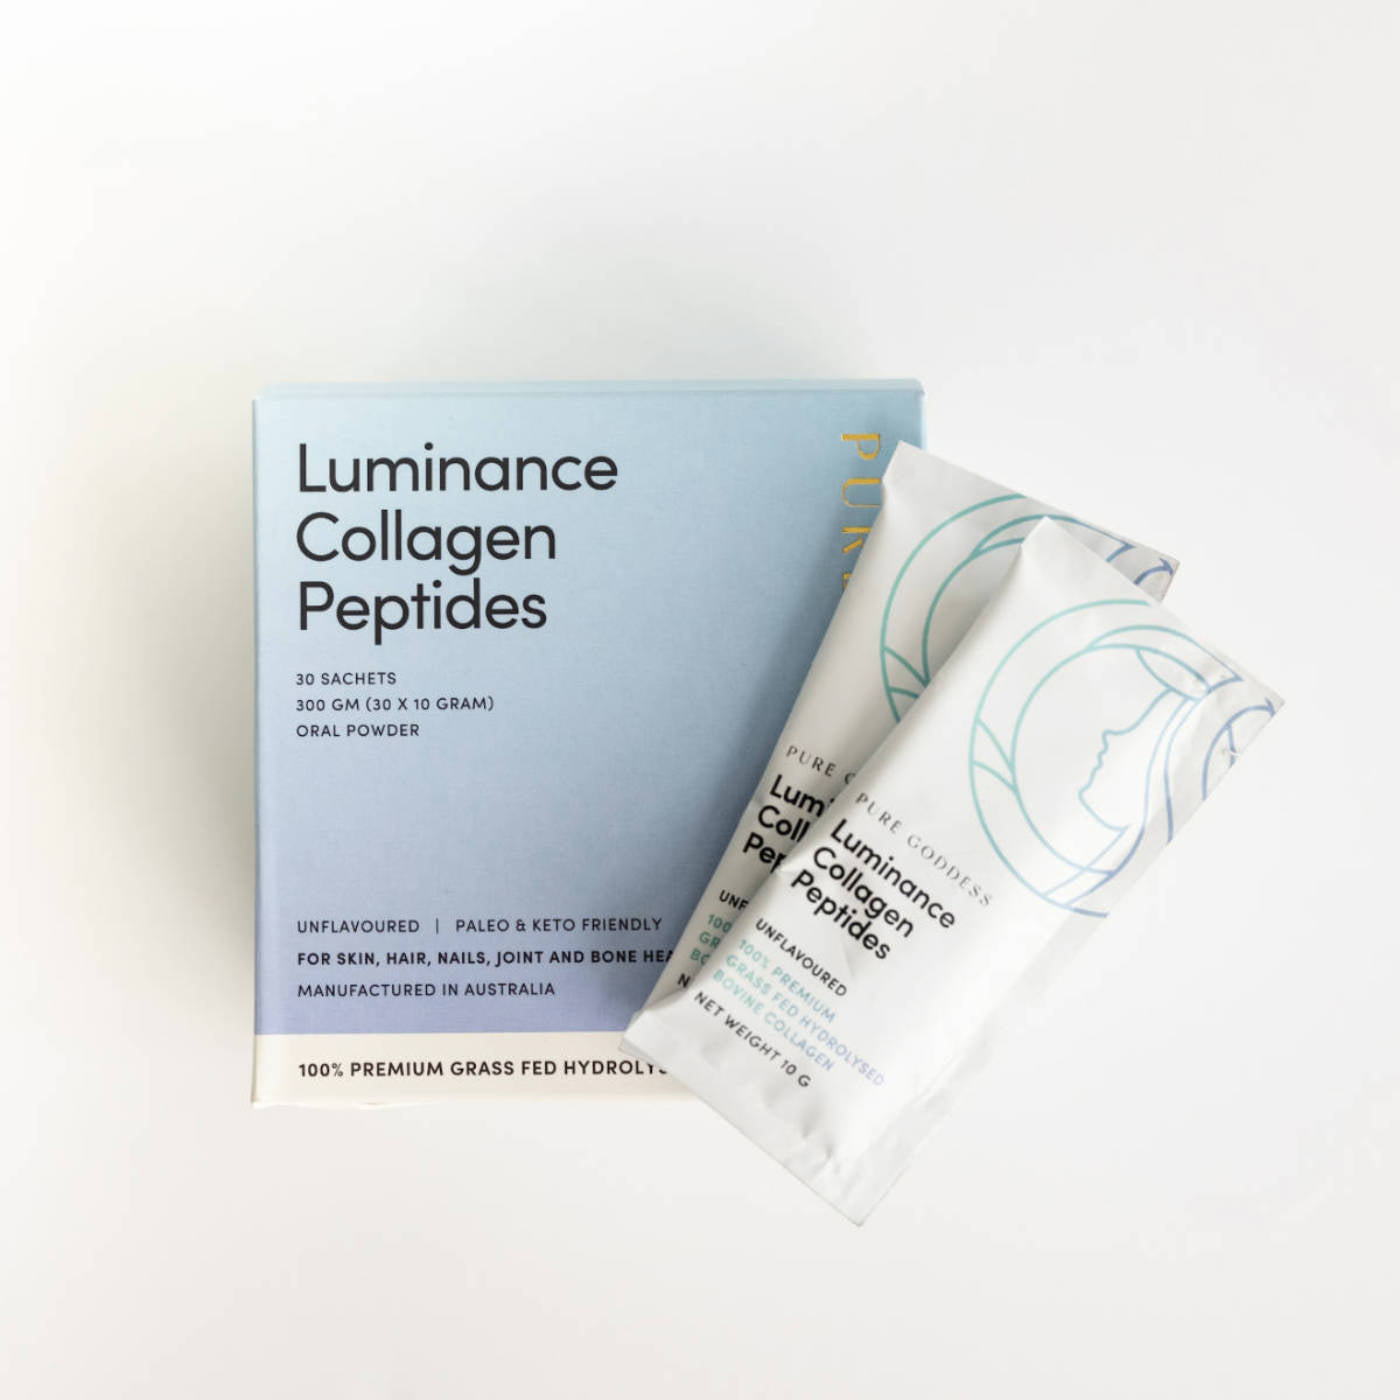 Luminance Collagen Peptides